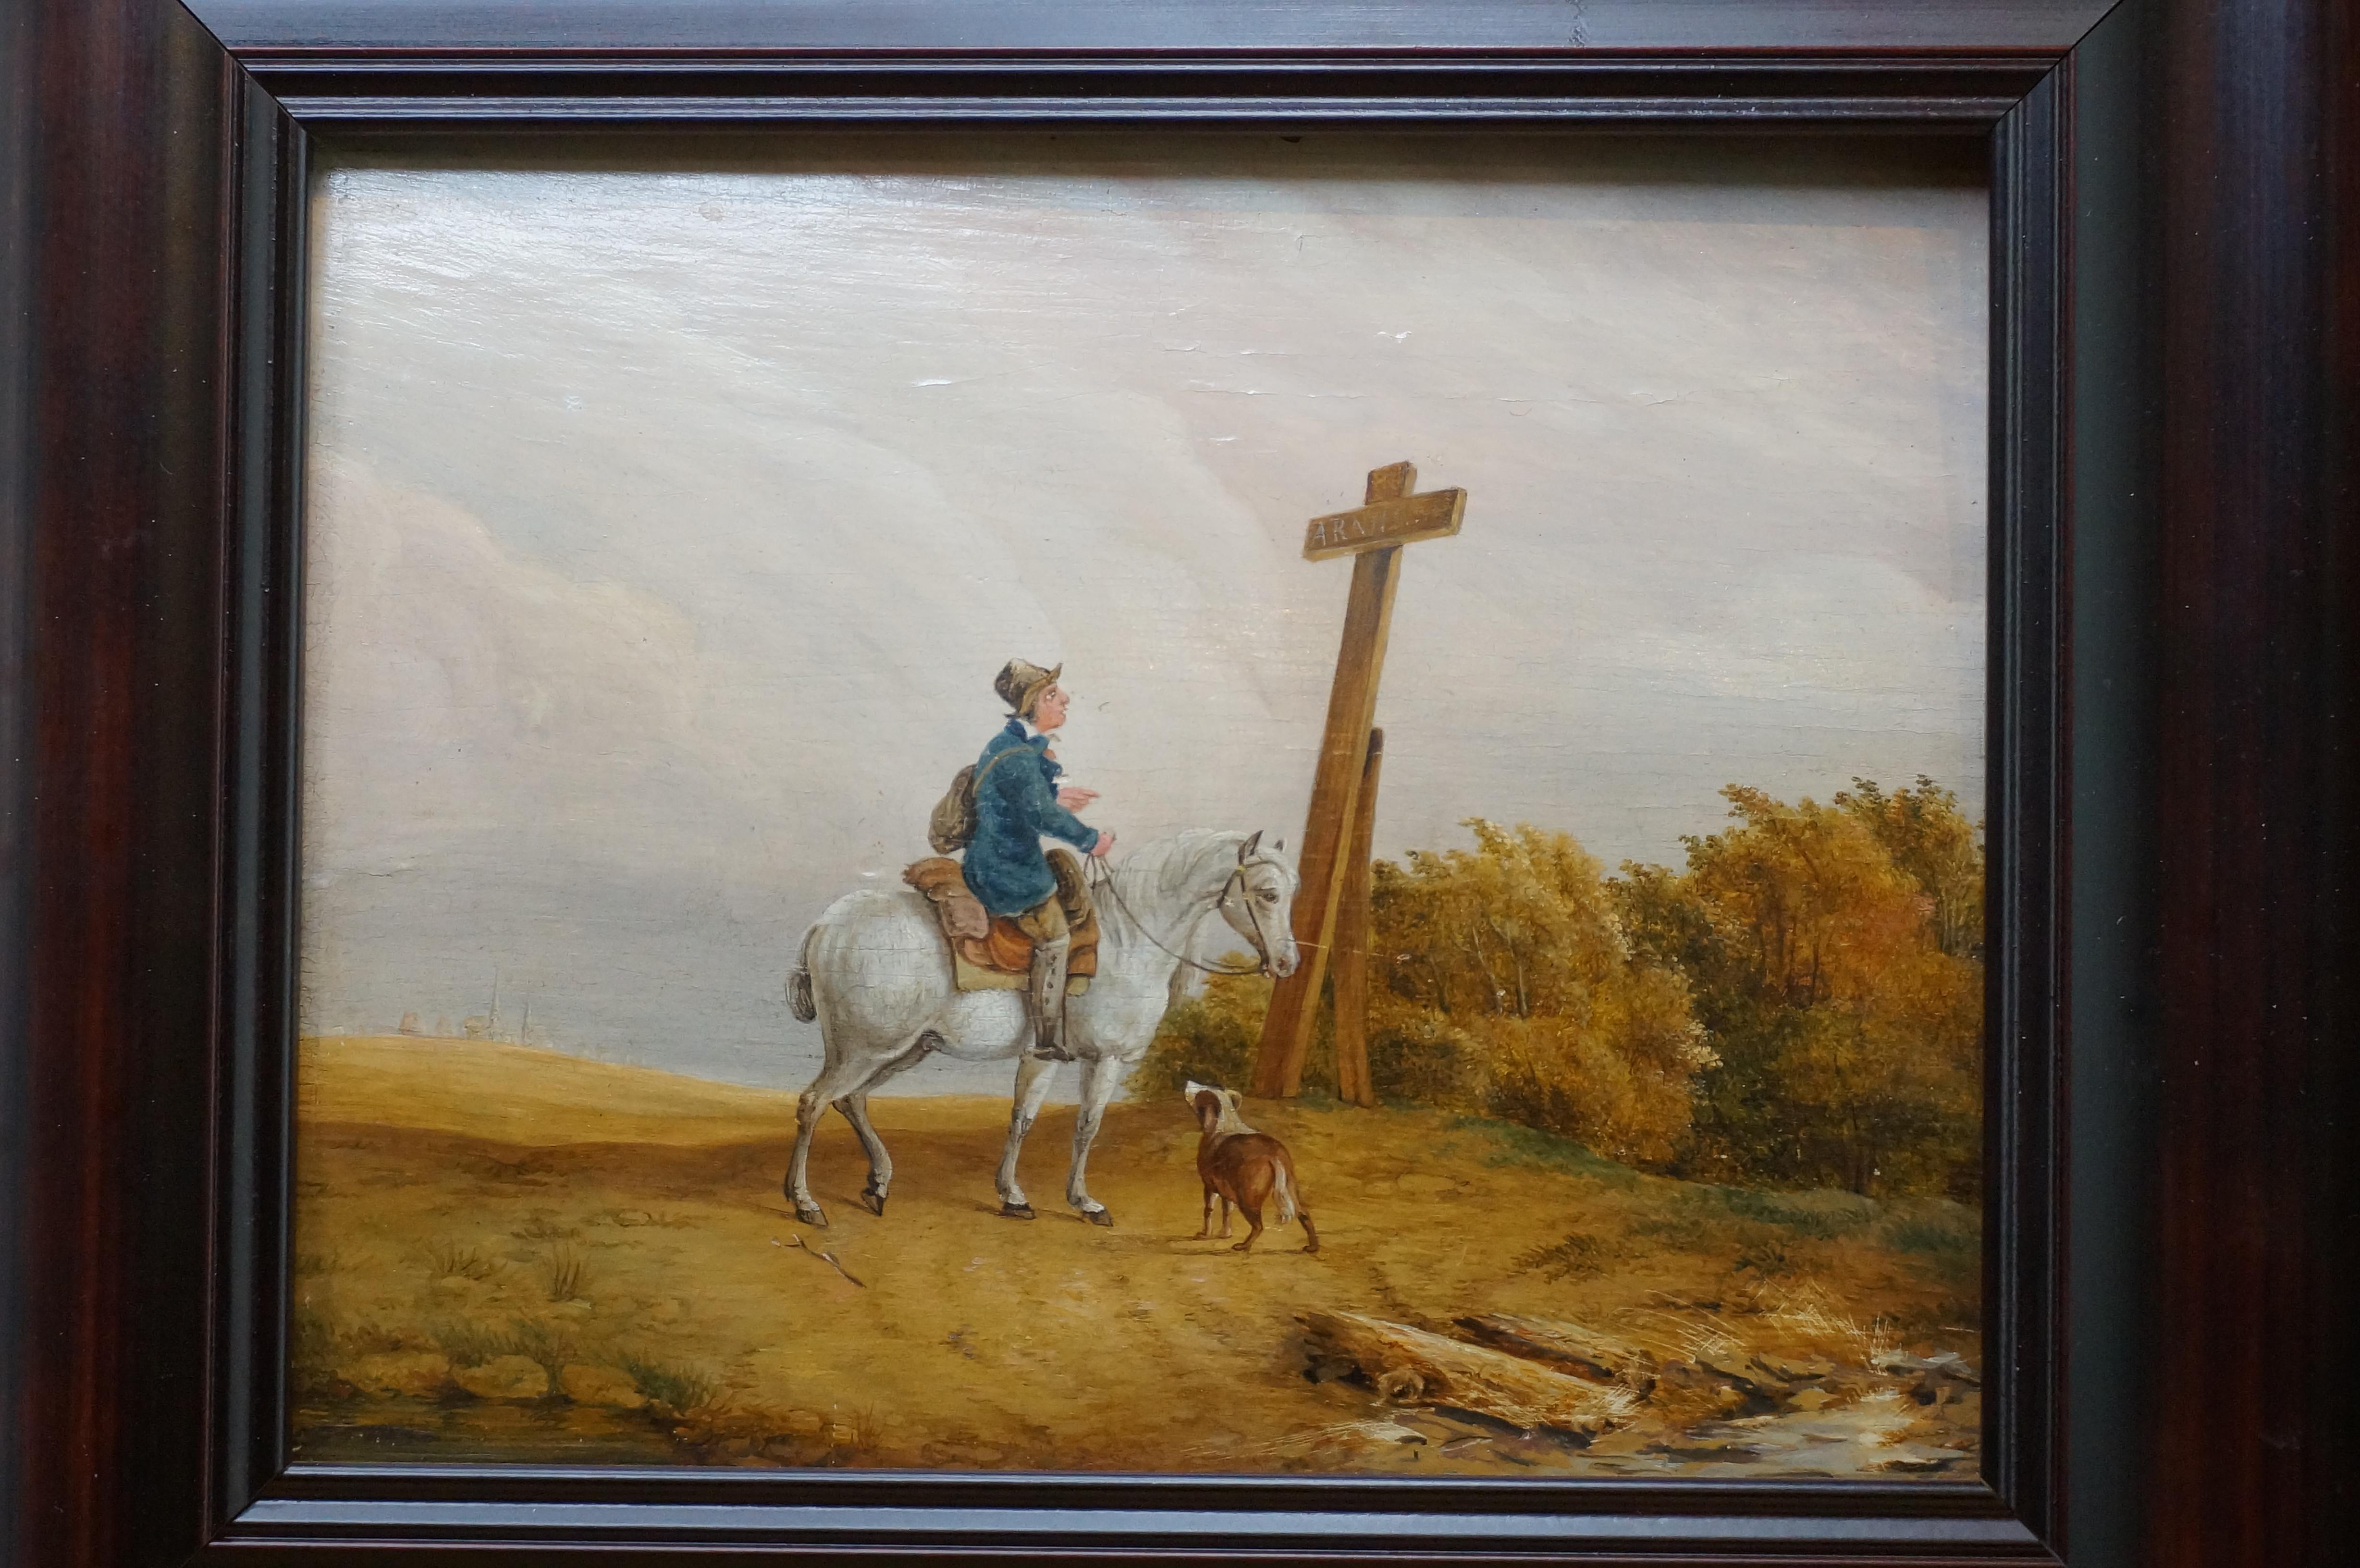 Gemälde mit einem Reisenden auf einem weißen Pferd, der von einem Hund begleitet wird und auf ein Straßenschild in Form eines Kreuzes blickt. Auf dem Straßenschild steht 